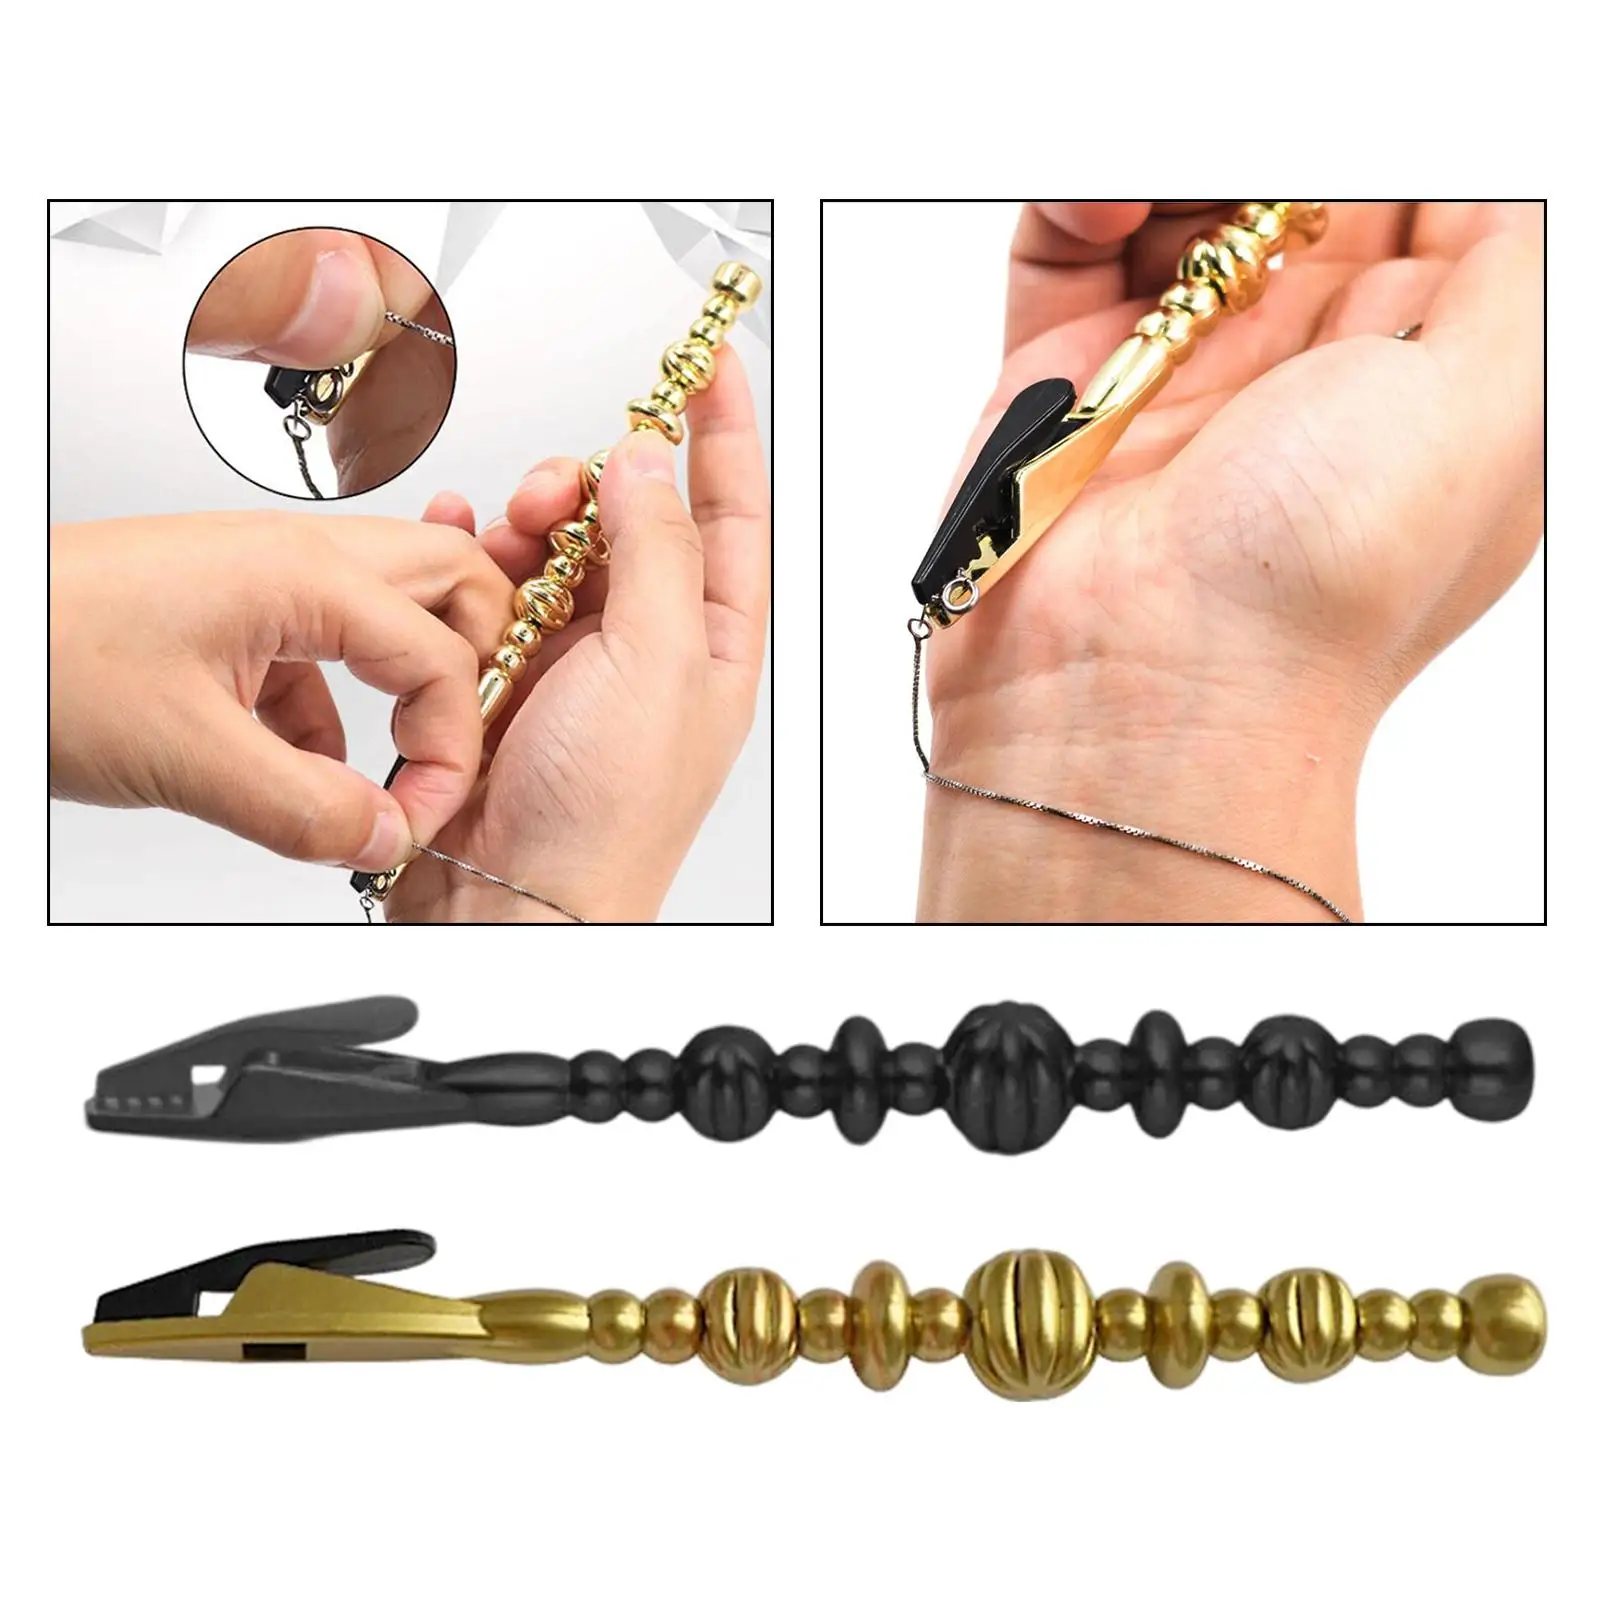 Gold Bracelet Helper , Jewelry Fastener Tools for Women, Wrist Bracelets